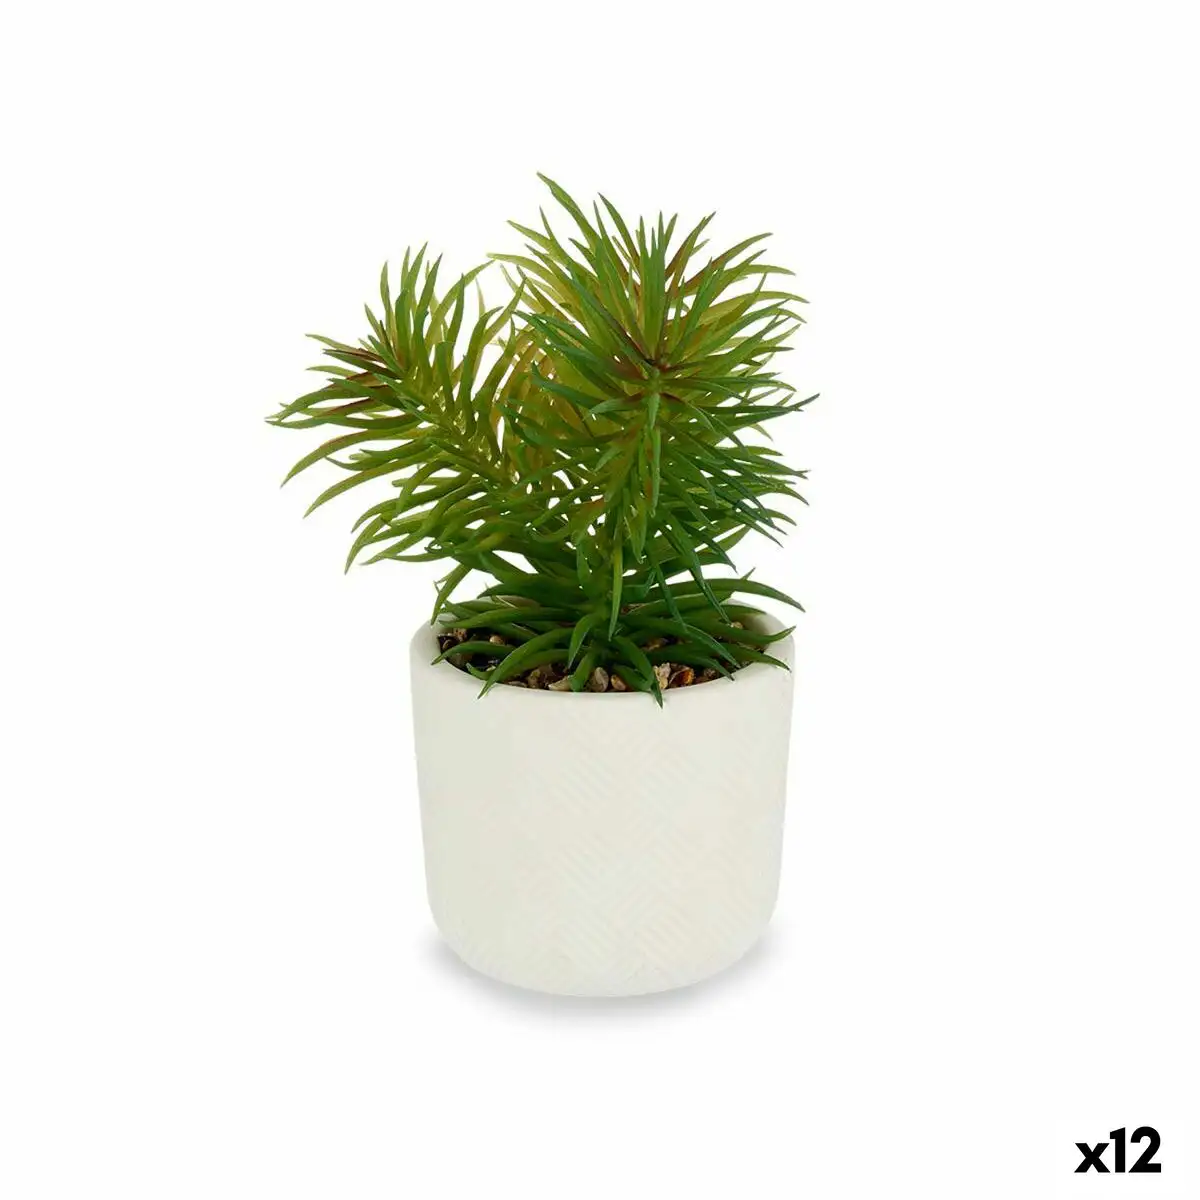 Plante de corative blanc vert 14 x 20 x 14 cm 12 unite s_7202. Entrez dans DIAYTAR SENEGAL - Où Chaque Détail Compte. Explorez notre boutique en ligne pour trouver des produits de haute qualité, soigneusement choisis pour répondre à vos besoins et vos désirs.